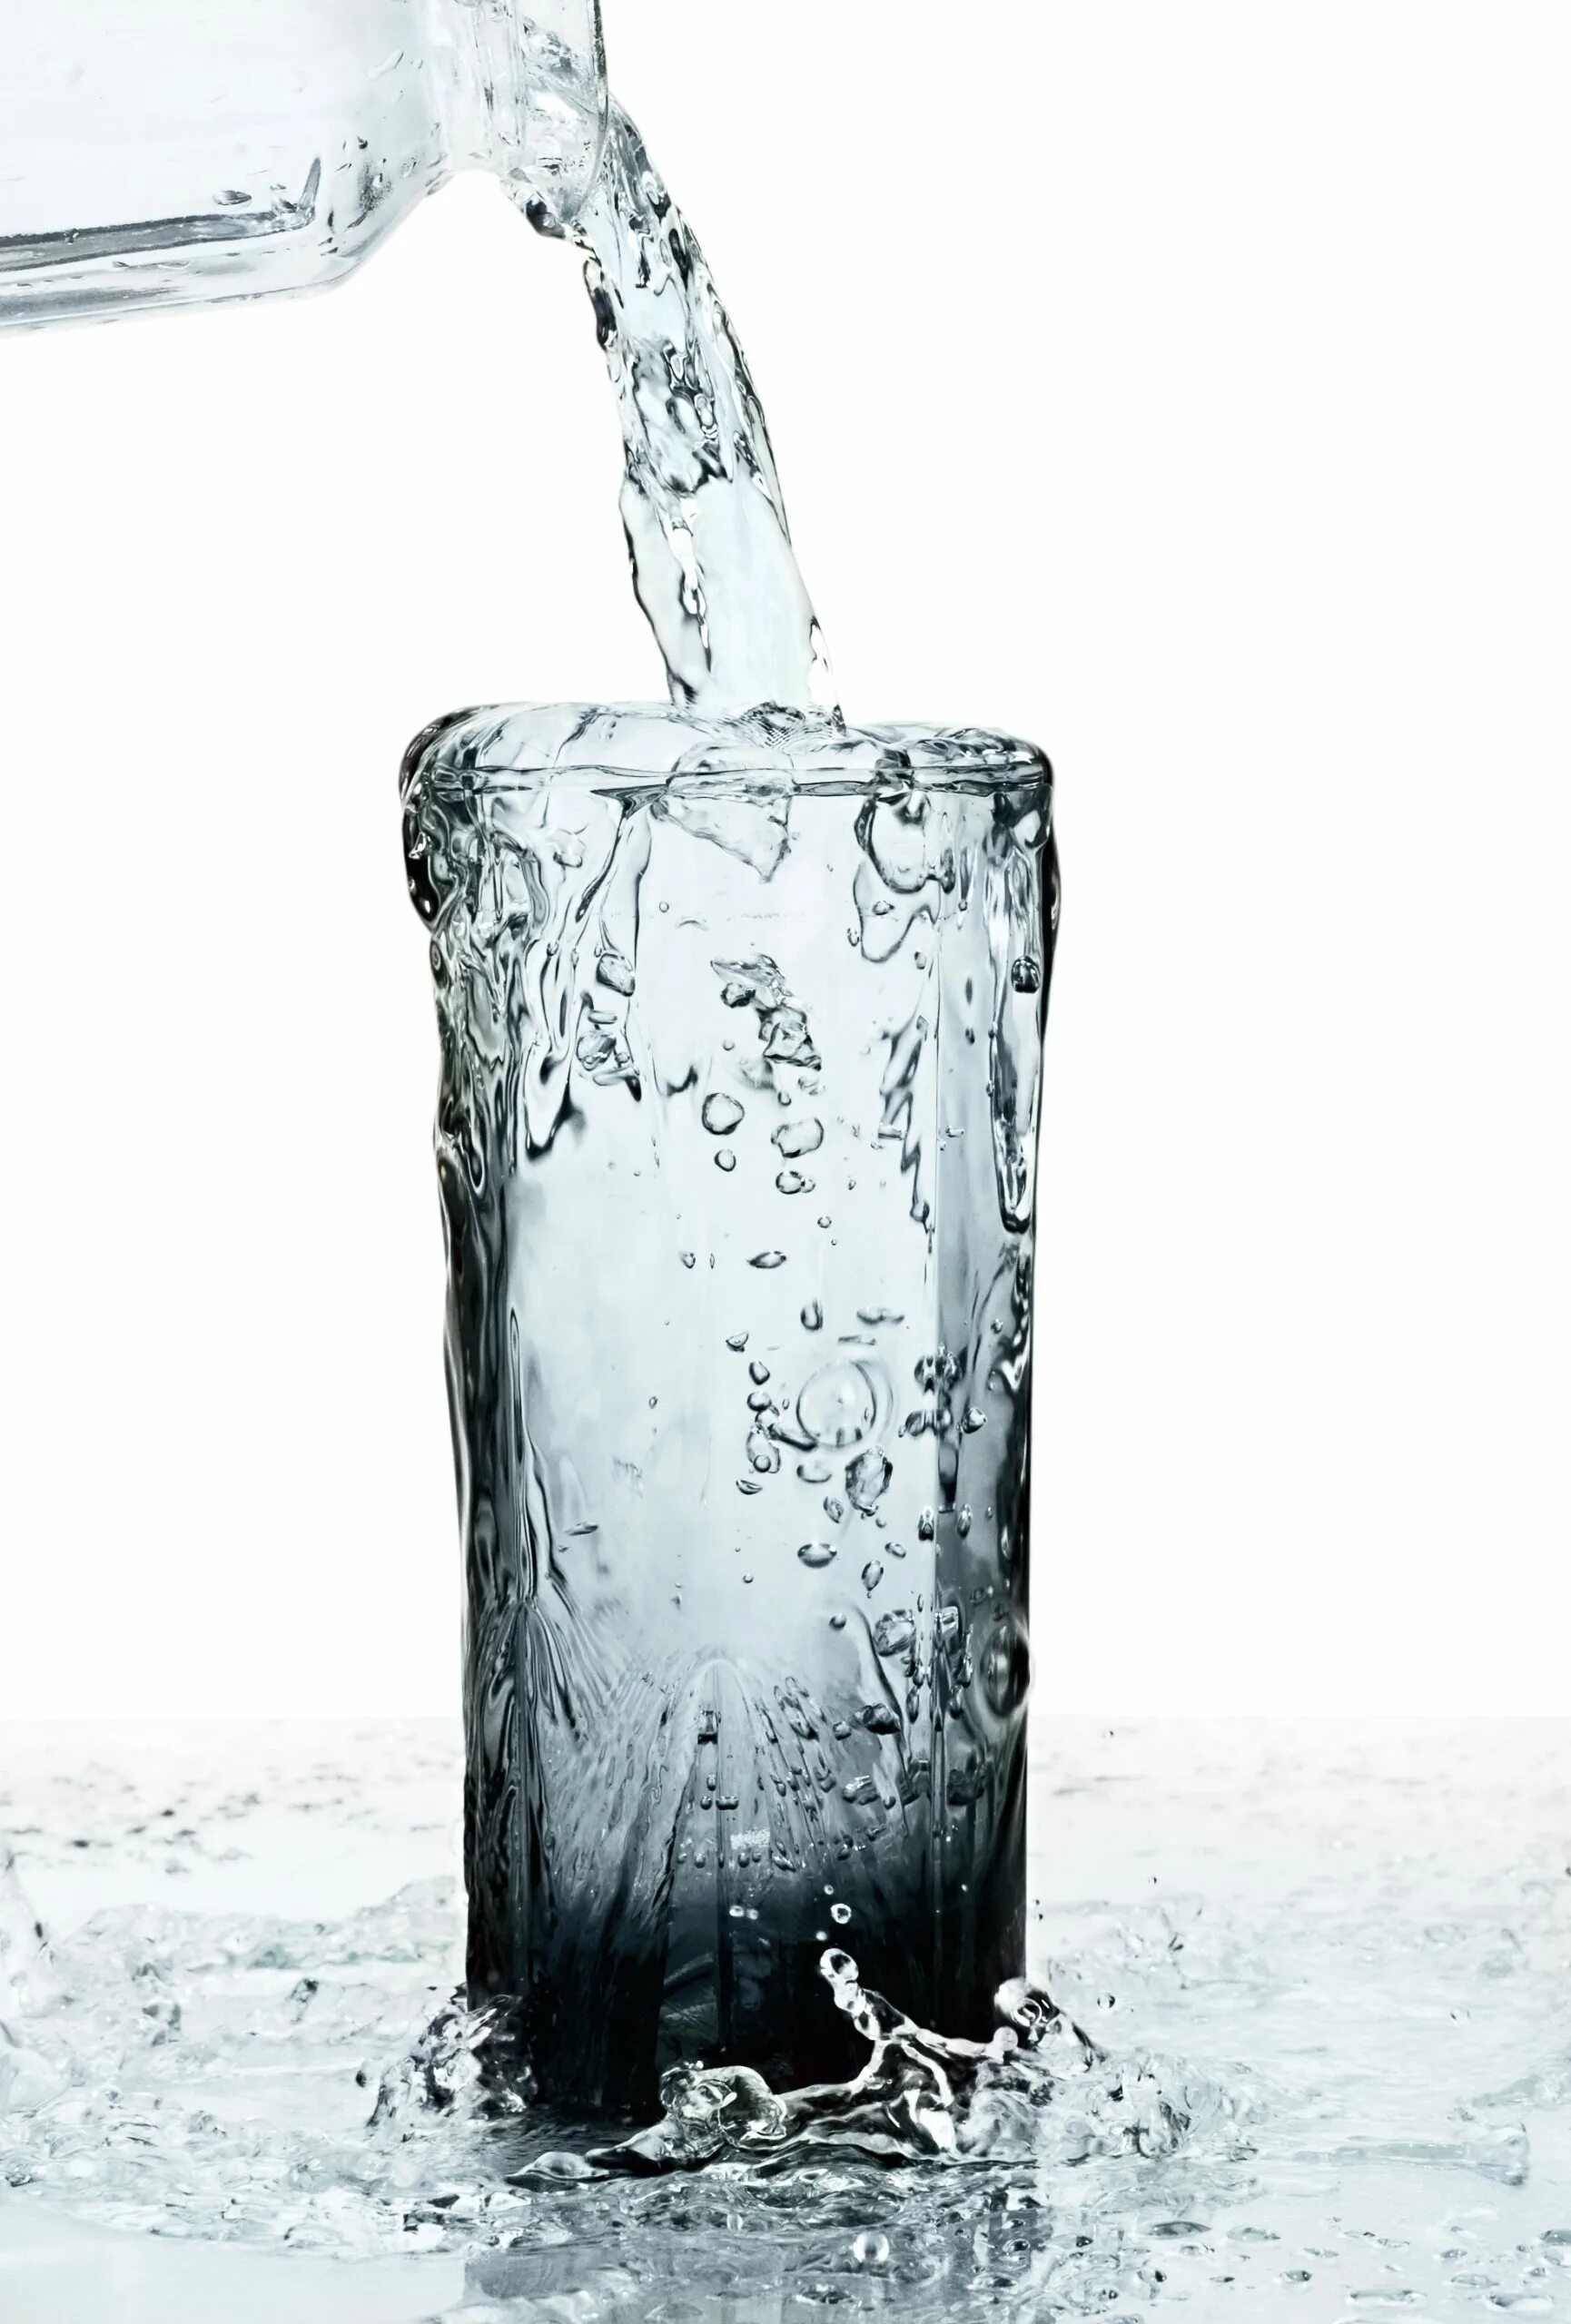 Переполнение жидкостью. Переполненный стакан. Переполненный стакан с водой. Вода льется в стакан. Вода переливается через край.